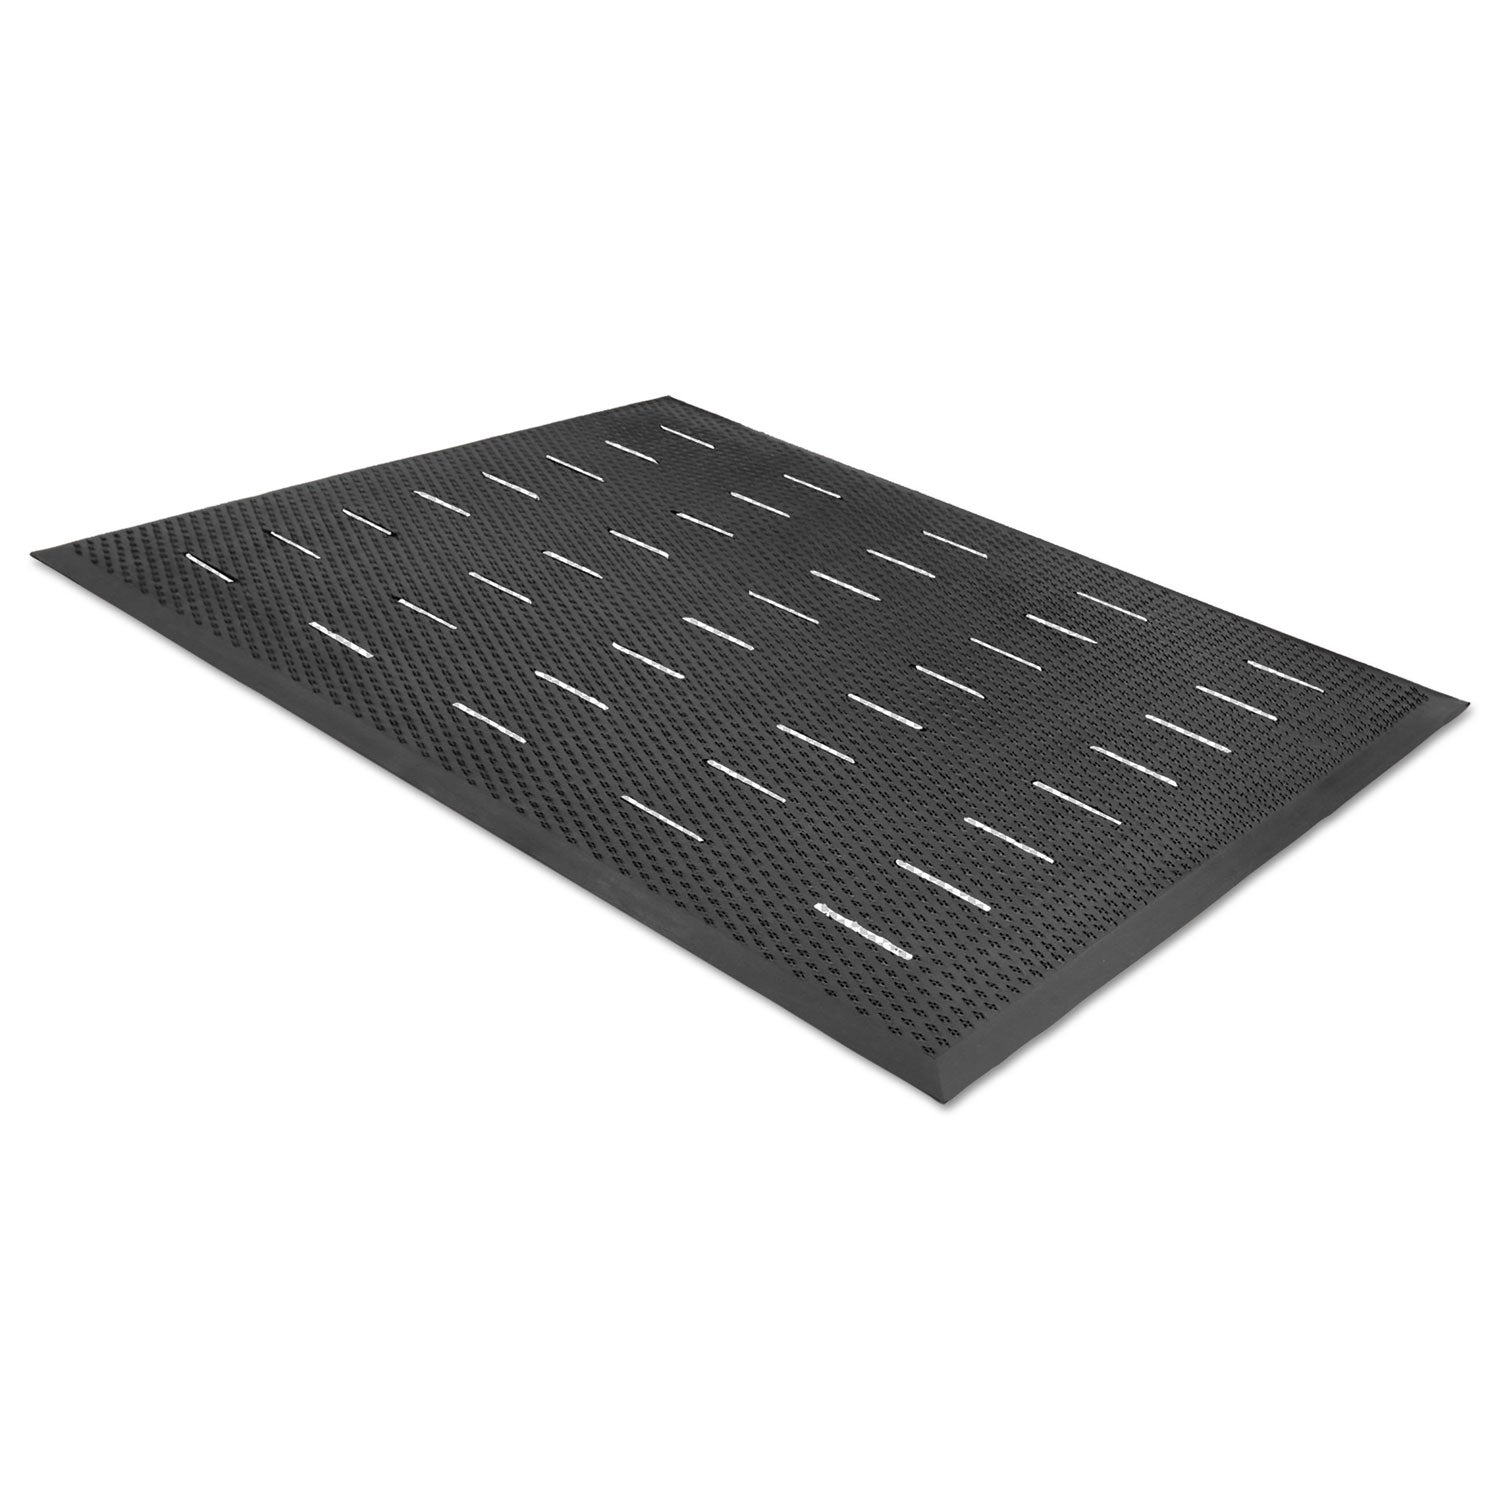 Free Flow Comfort Utility Floor Mat, 36 x 48, Black - 